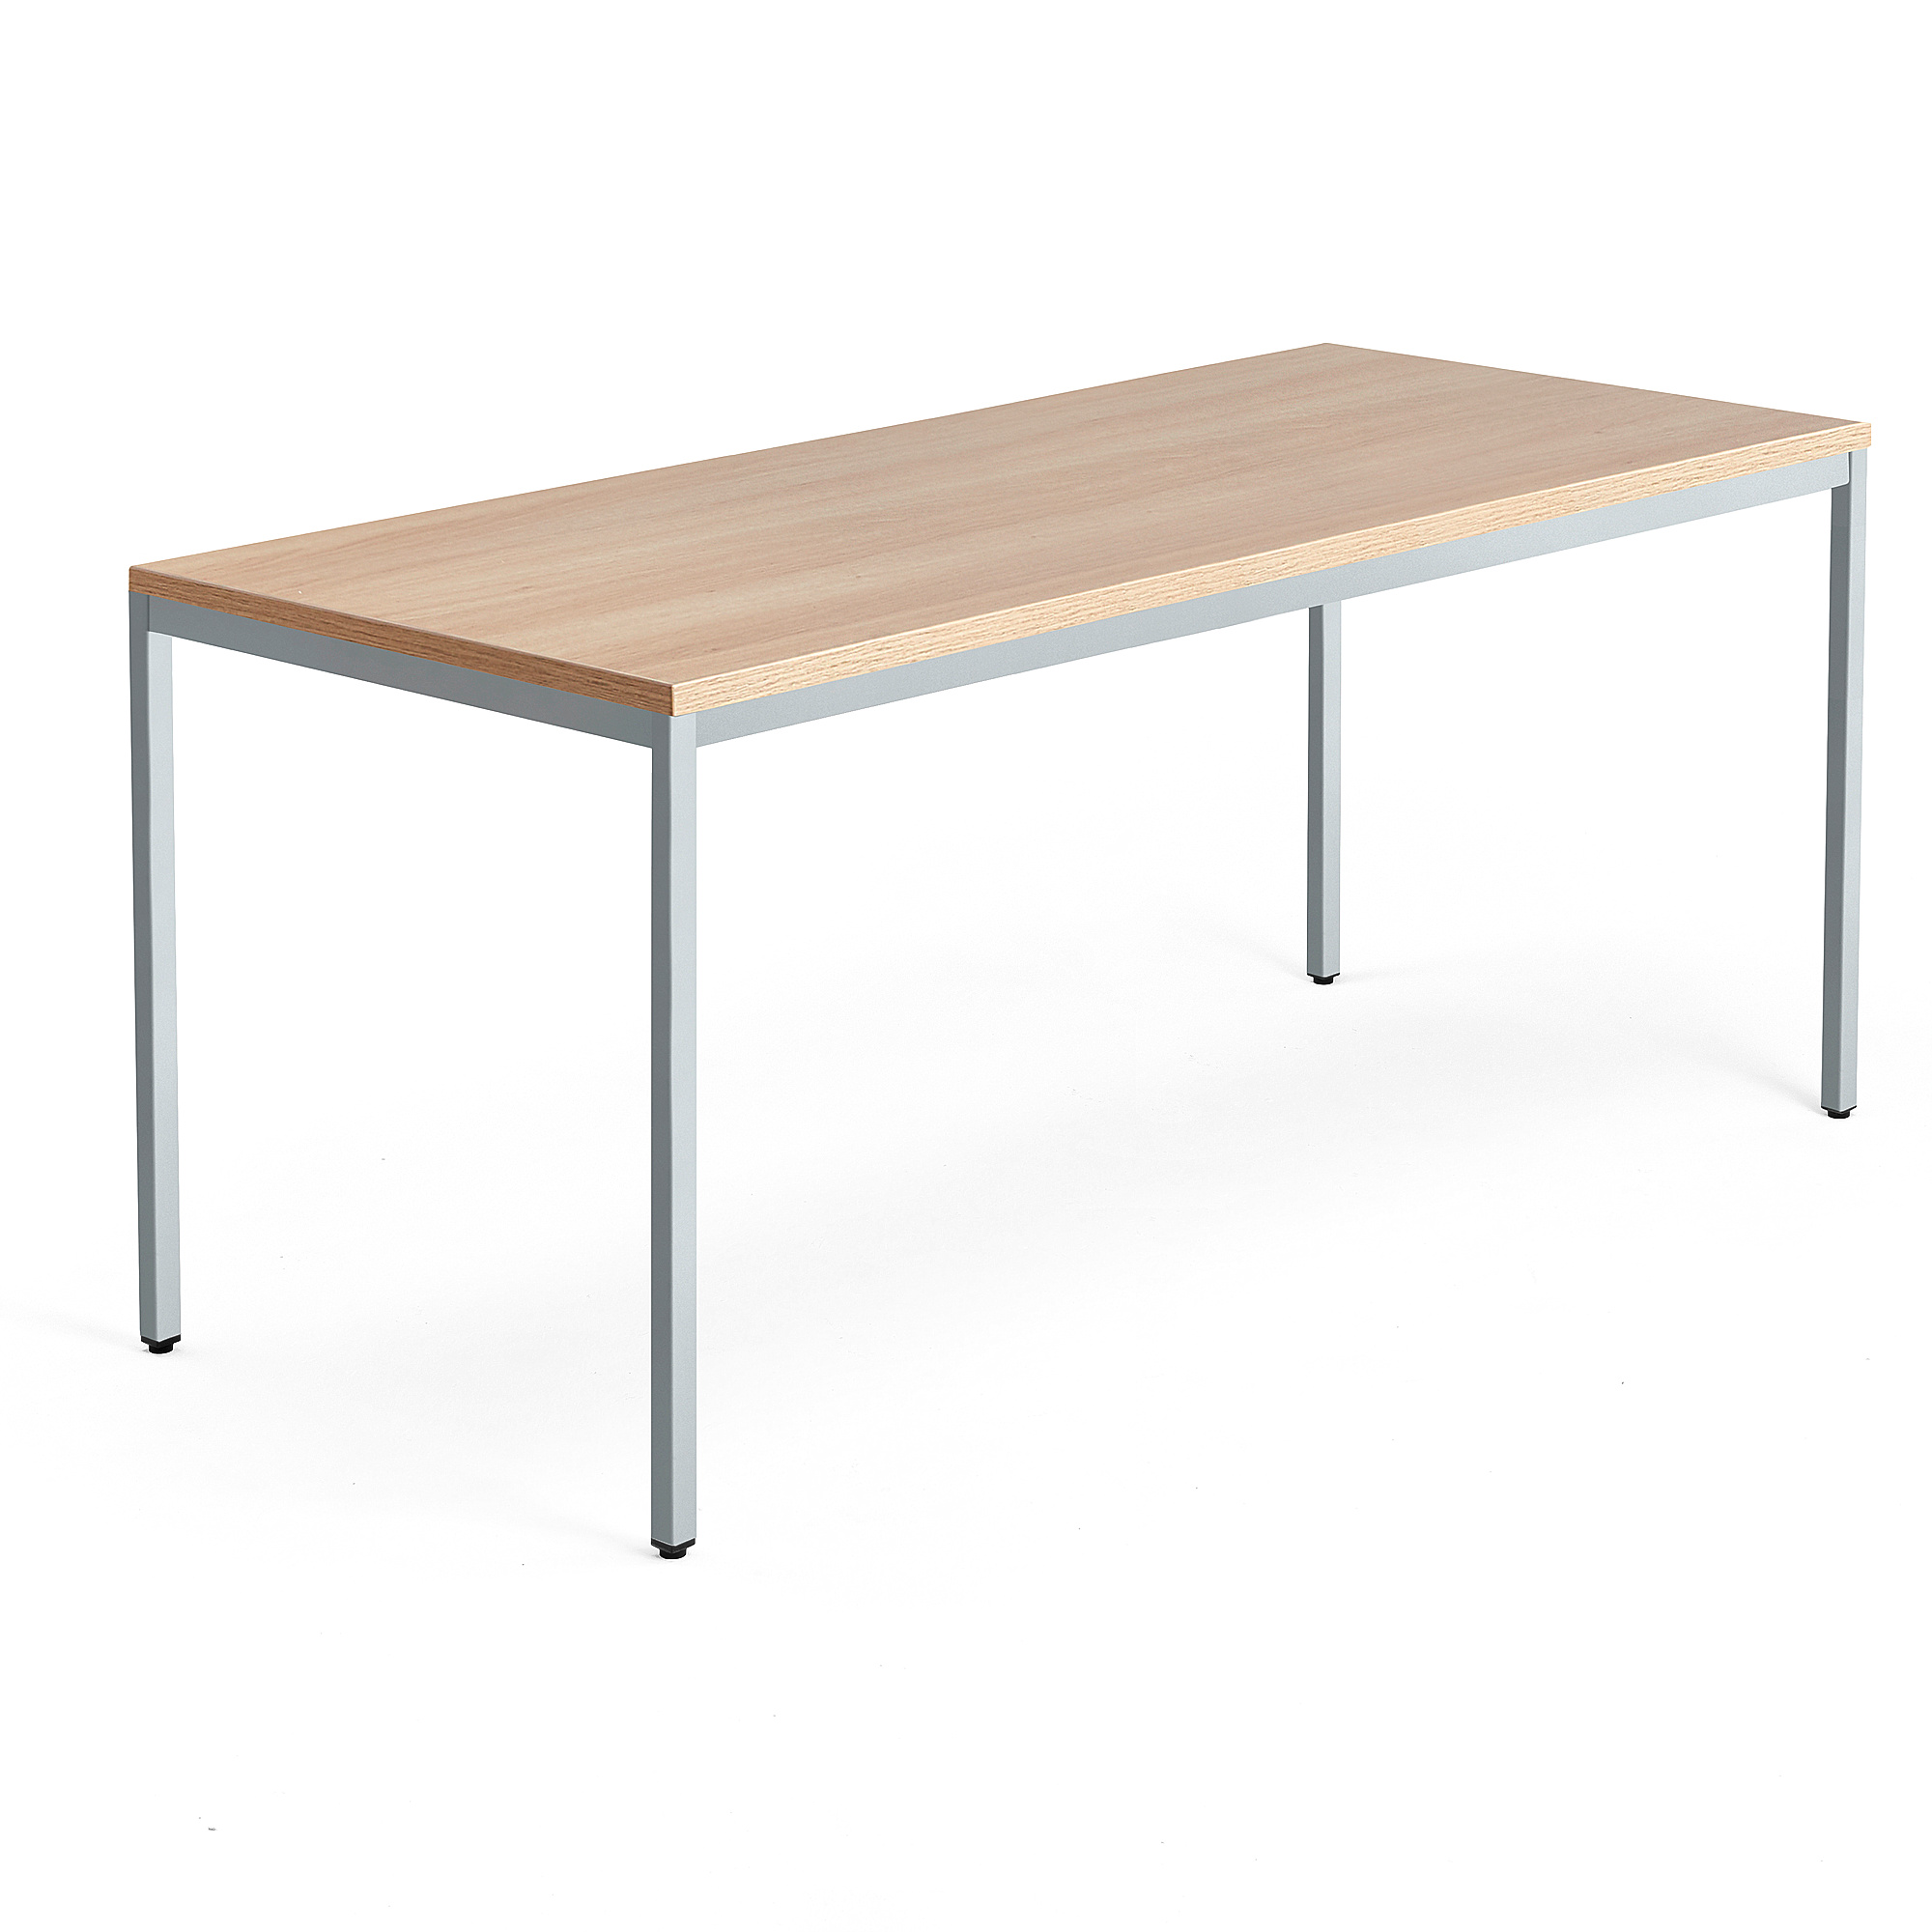 Psací stůl QBUS, 4 nohy, 1800x800 mm, stříbrný rám, dub